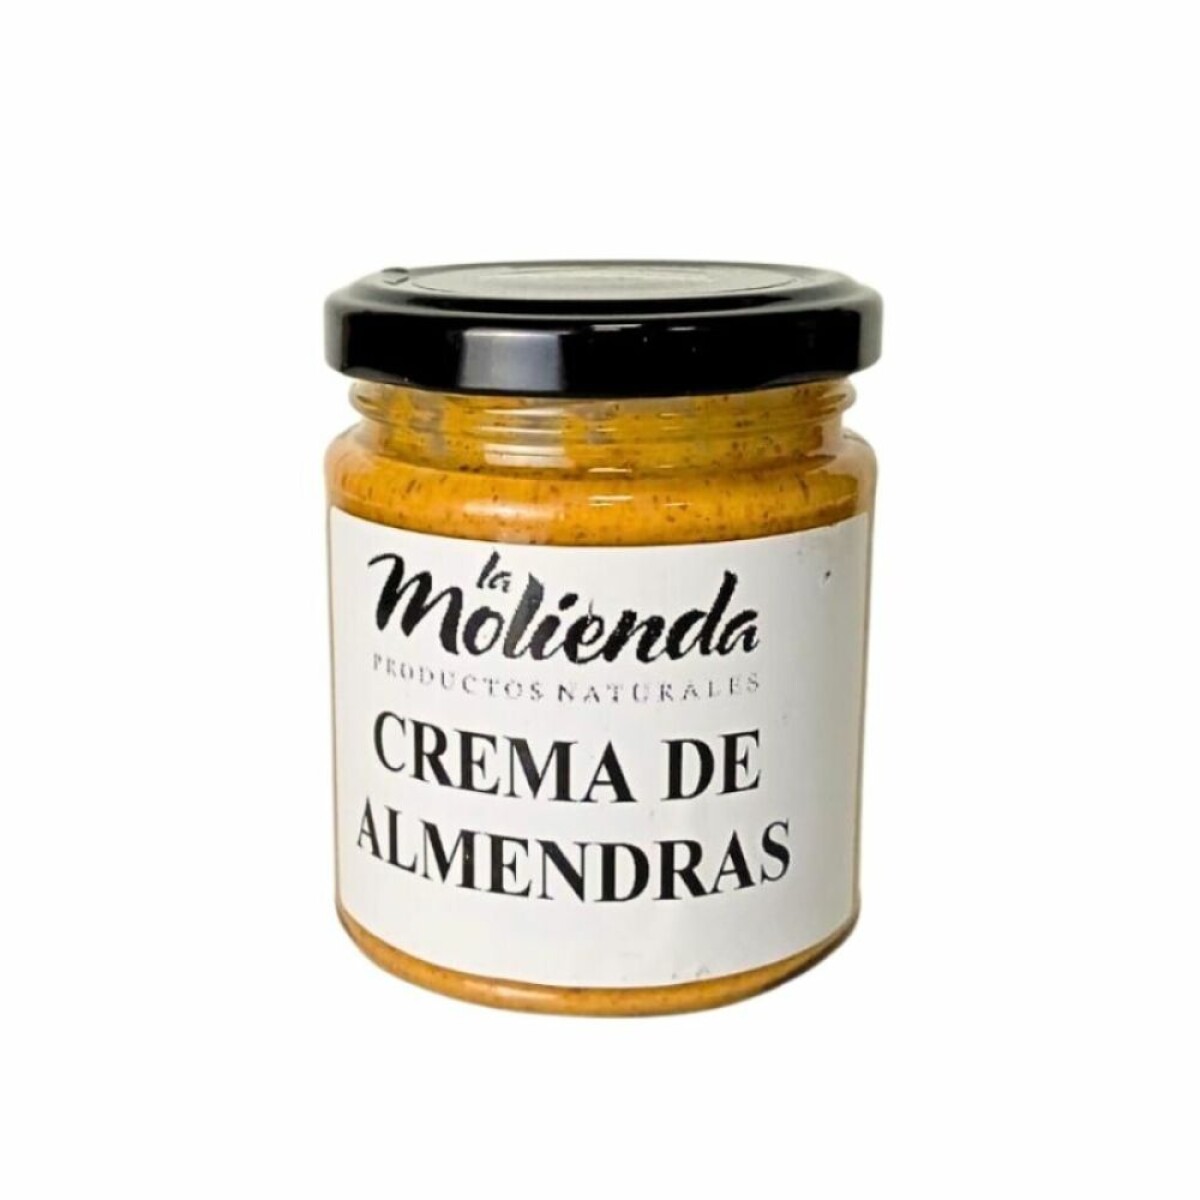 Crema De Almendras La Molienda 190g 